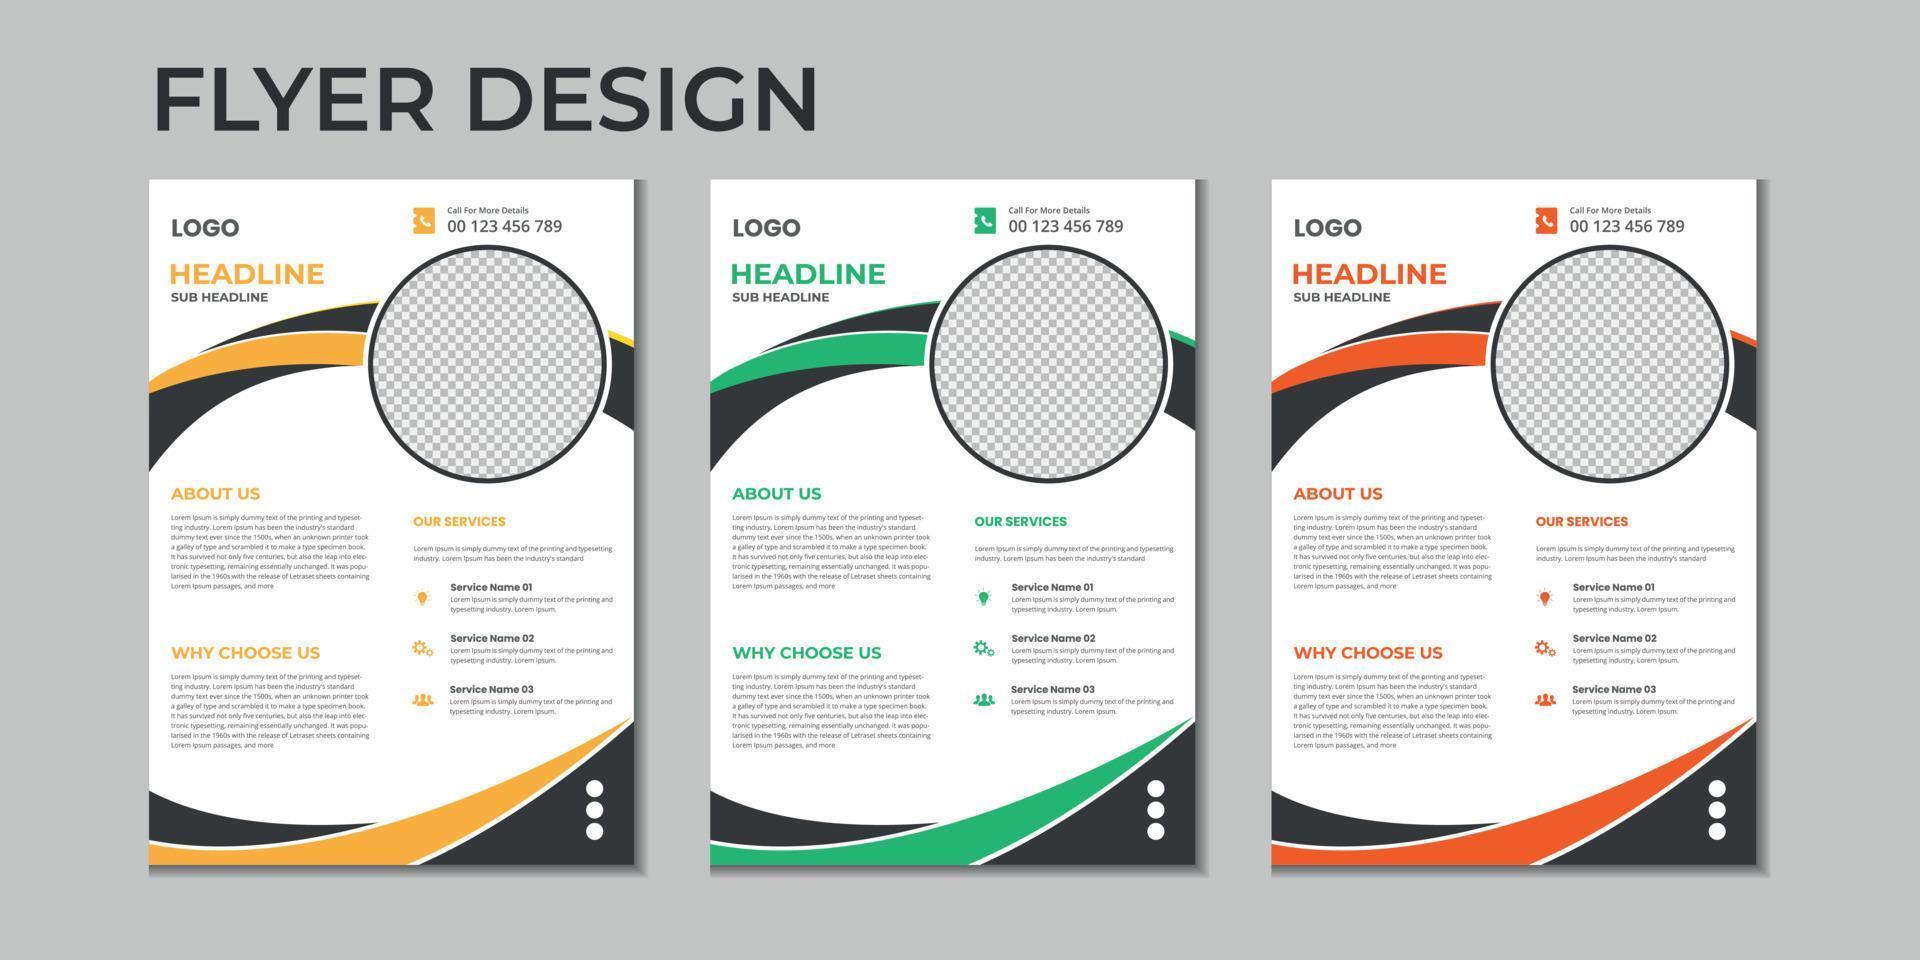 Vektor-Flyer-Vorlage für Geschäftspräsentationen, modernes Cover-Layout, Jahresbericht, Poster, Flyer in a4 mit bunten geometrischen Formen, Verlaufsfarbe mit hellem Hintergrund vektor